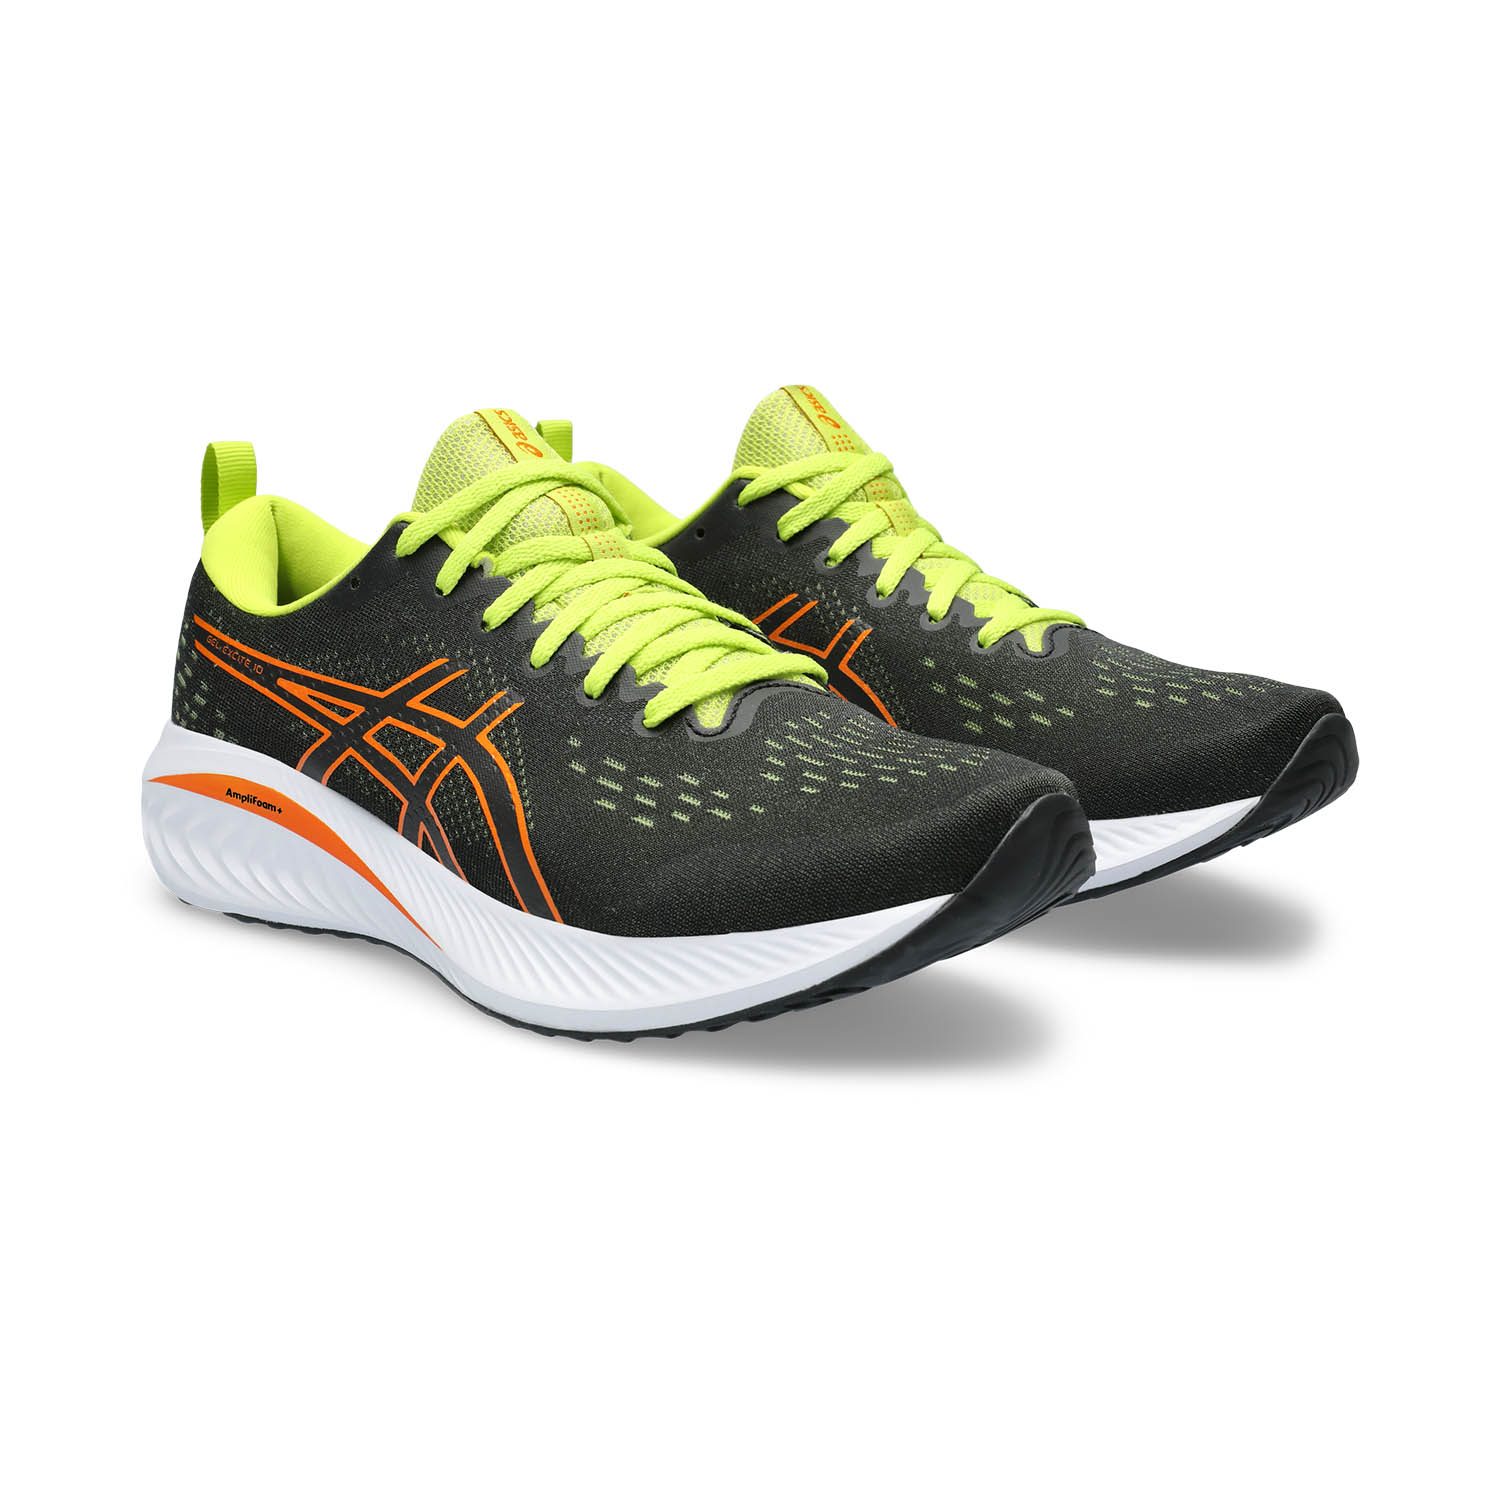 Asics Gel Excite 10 Men's Running Shoes - Black/Bright Orange